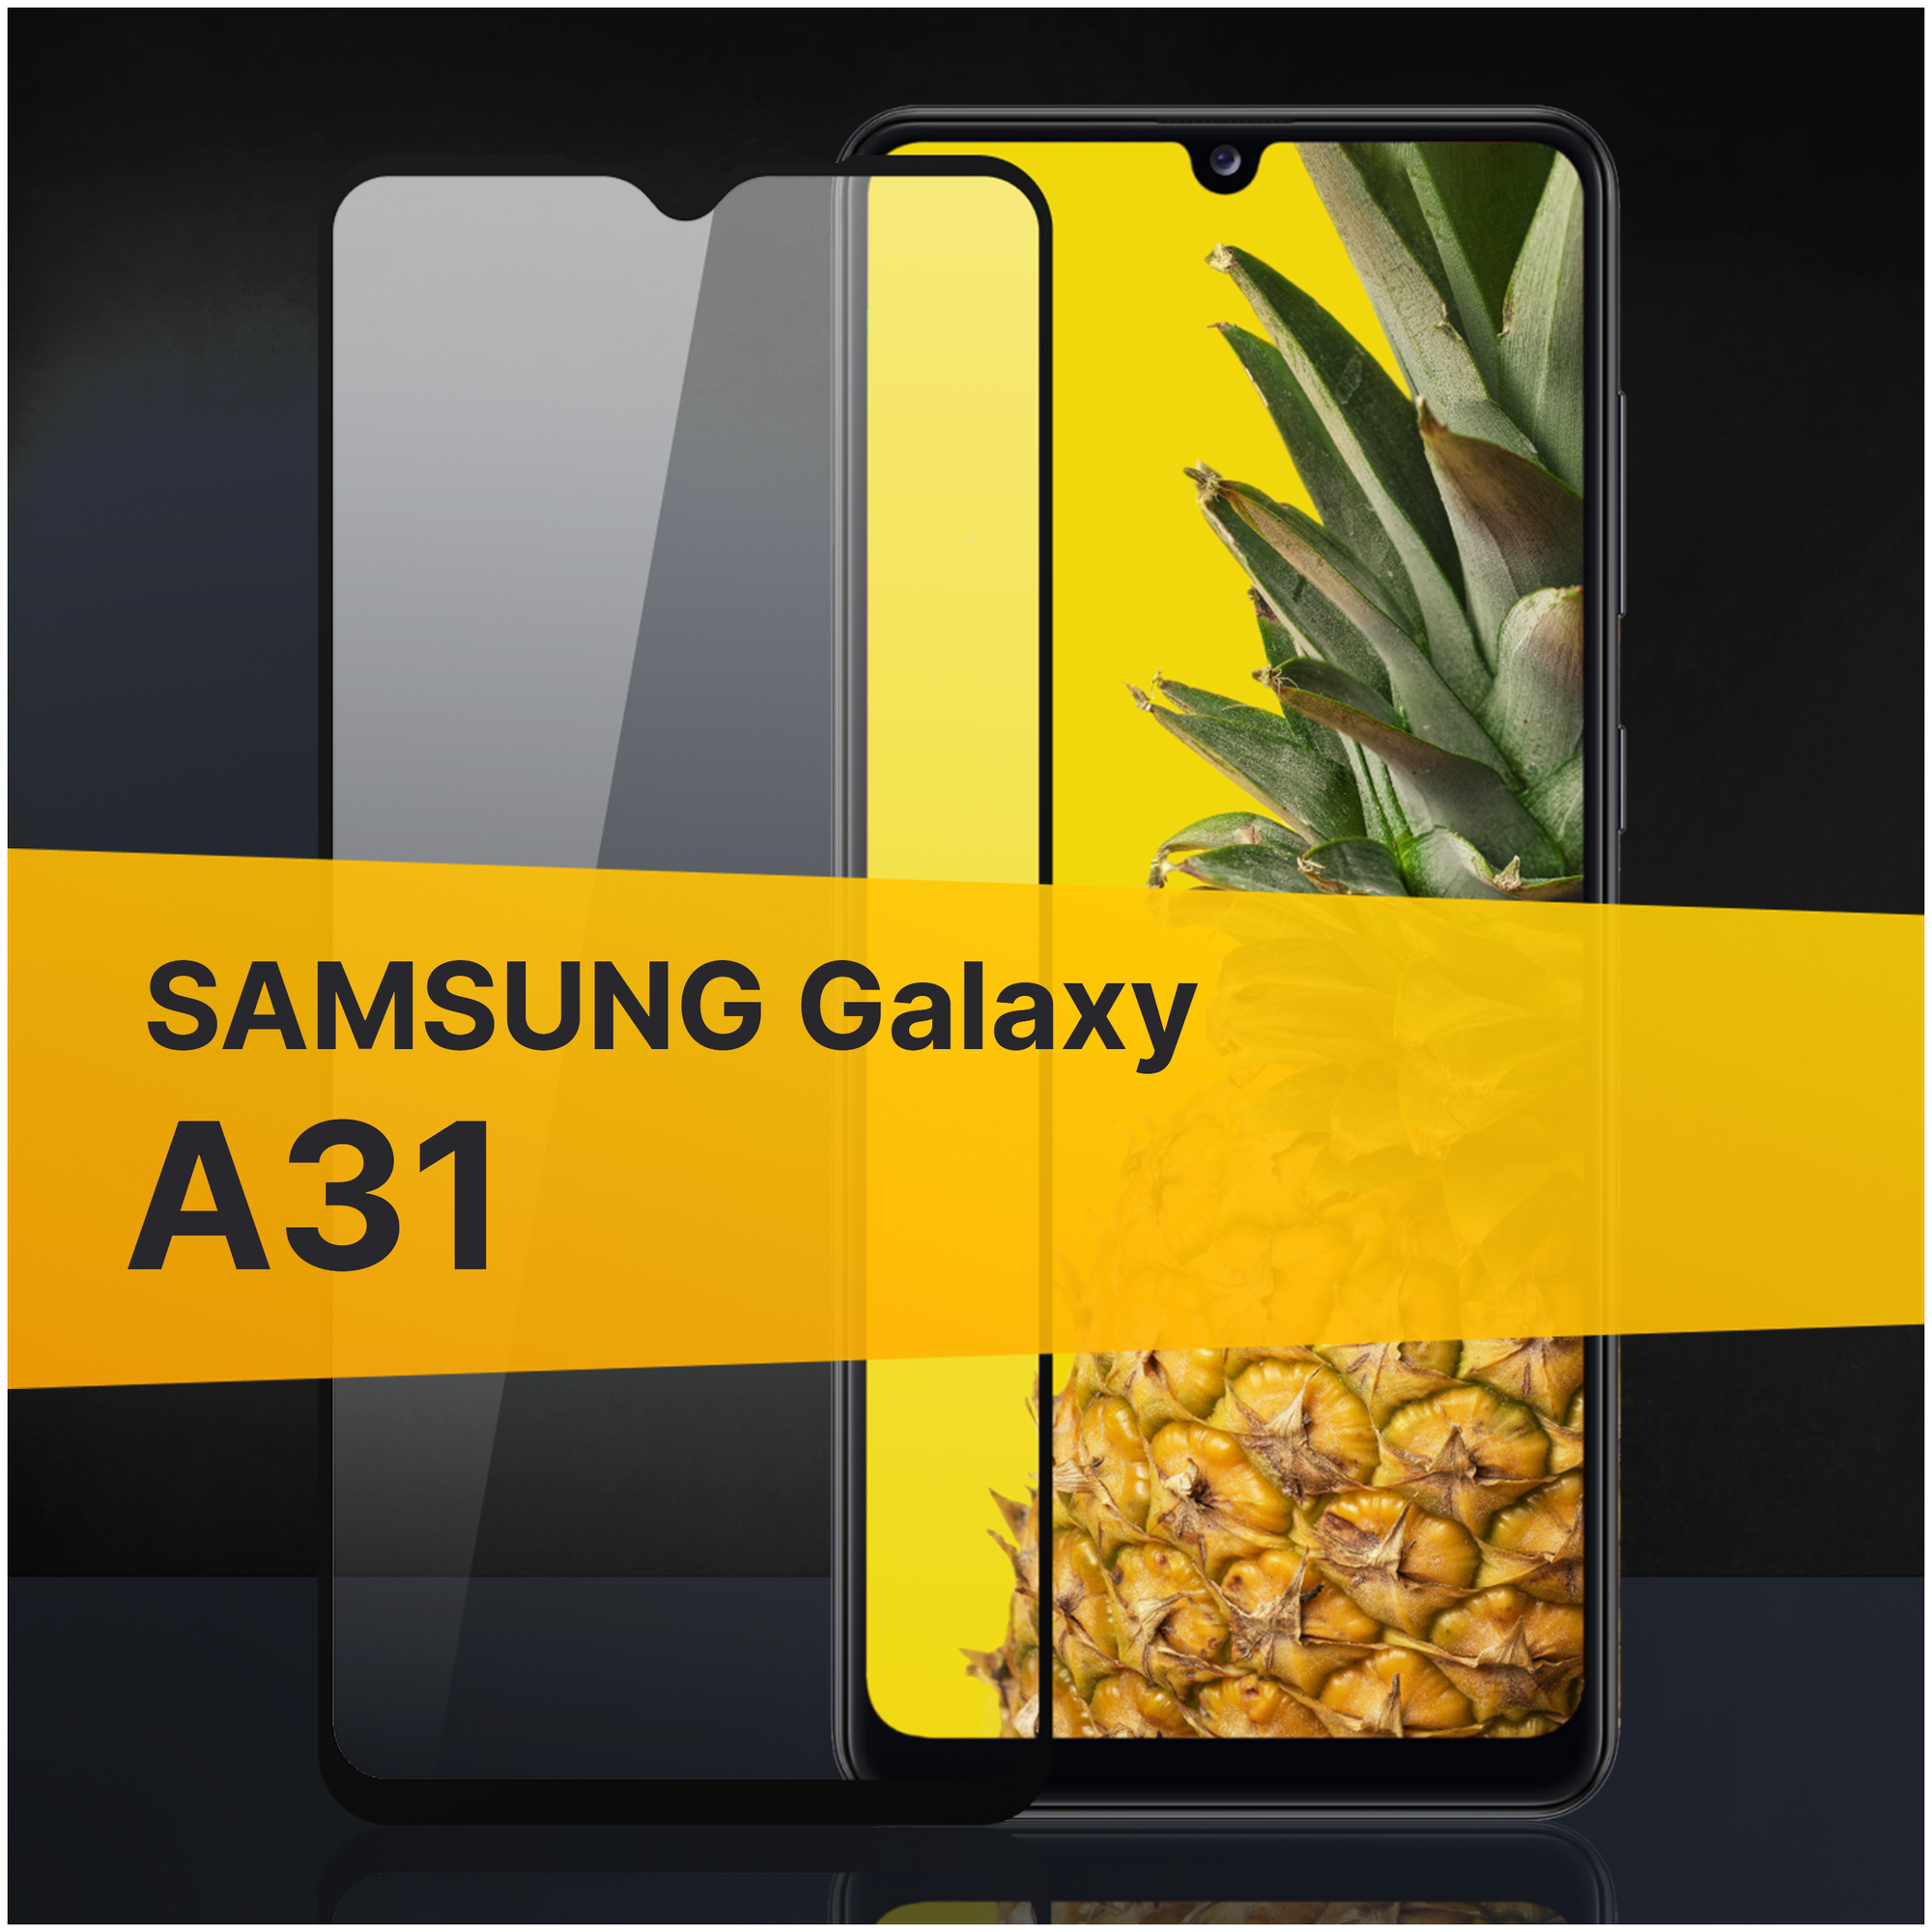 Противоударное защитное стекло для телефона Samsung Galaxy A31 / Полноклеевое 3D стекло с олеофобным покрытием на смартфон Самсунг Галакси А31 / С черной рамкой